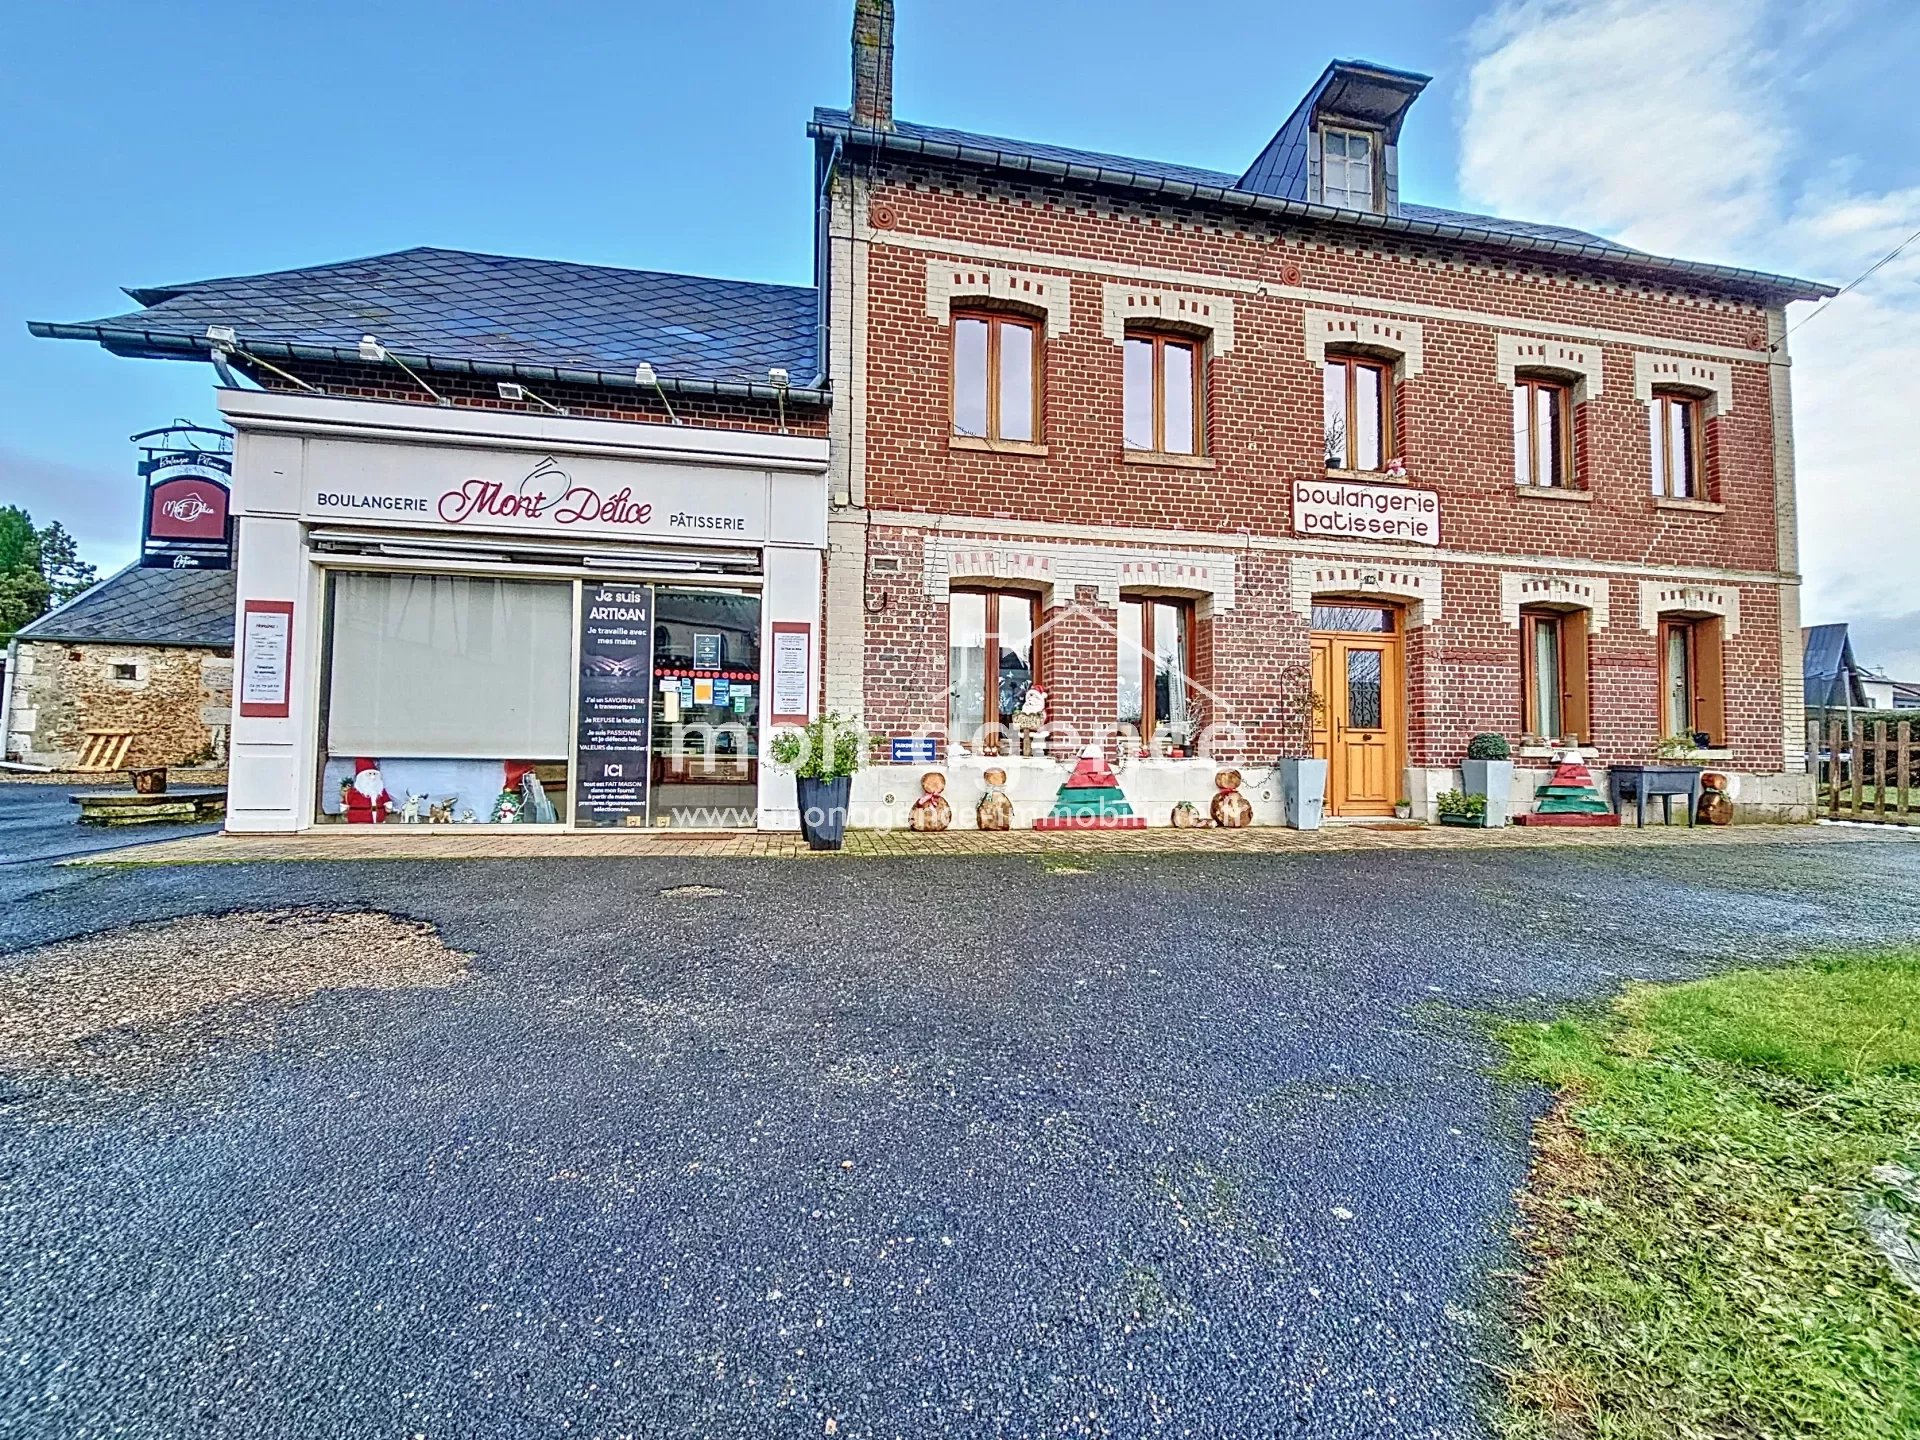 Fonds de commerce, boulangerie/pâtisserie, Plateau Est de Rouen